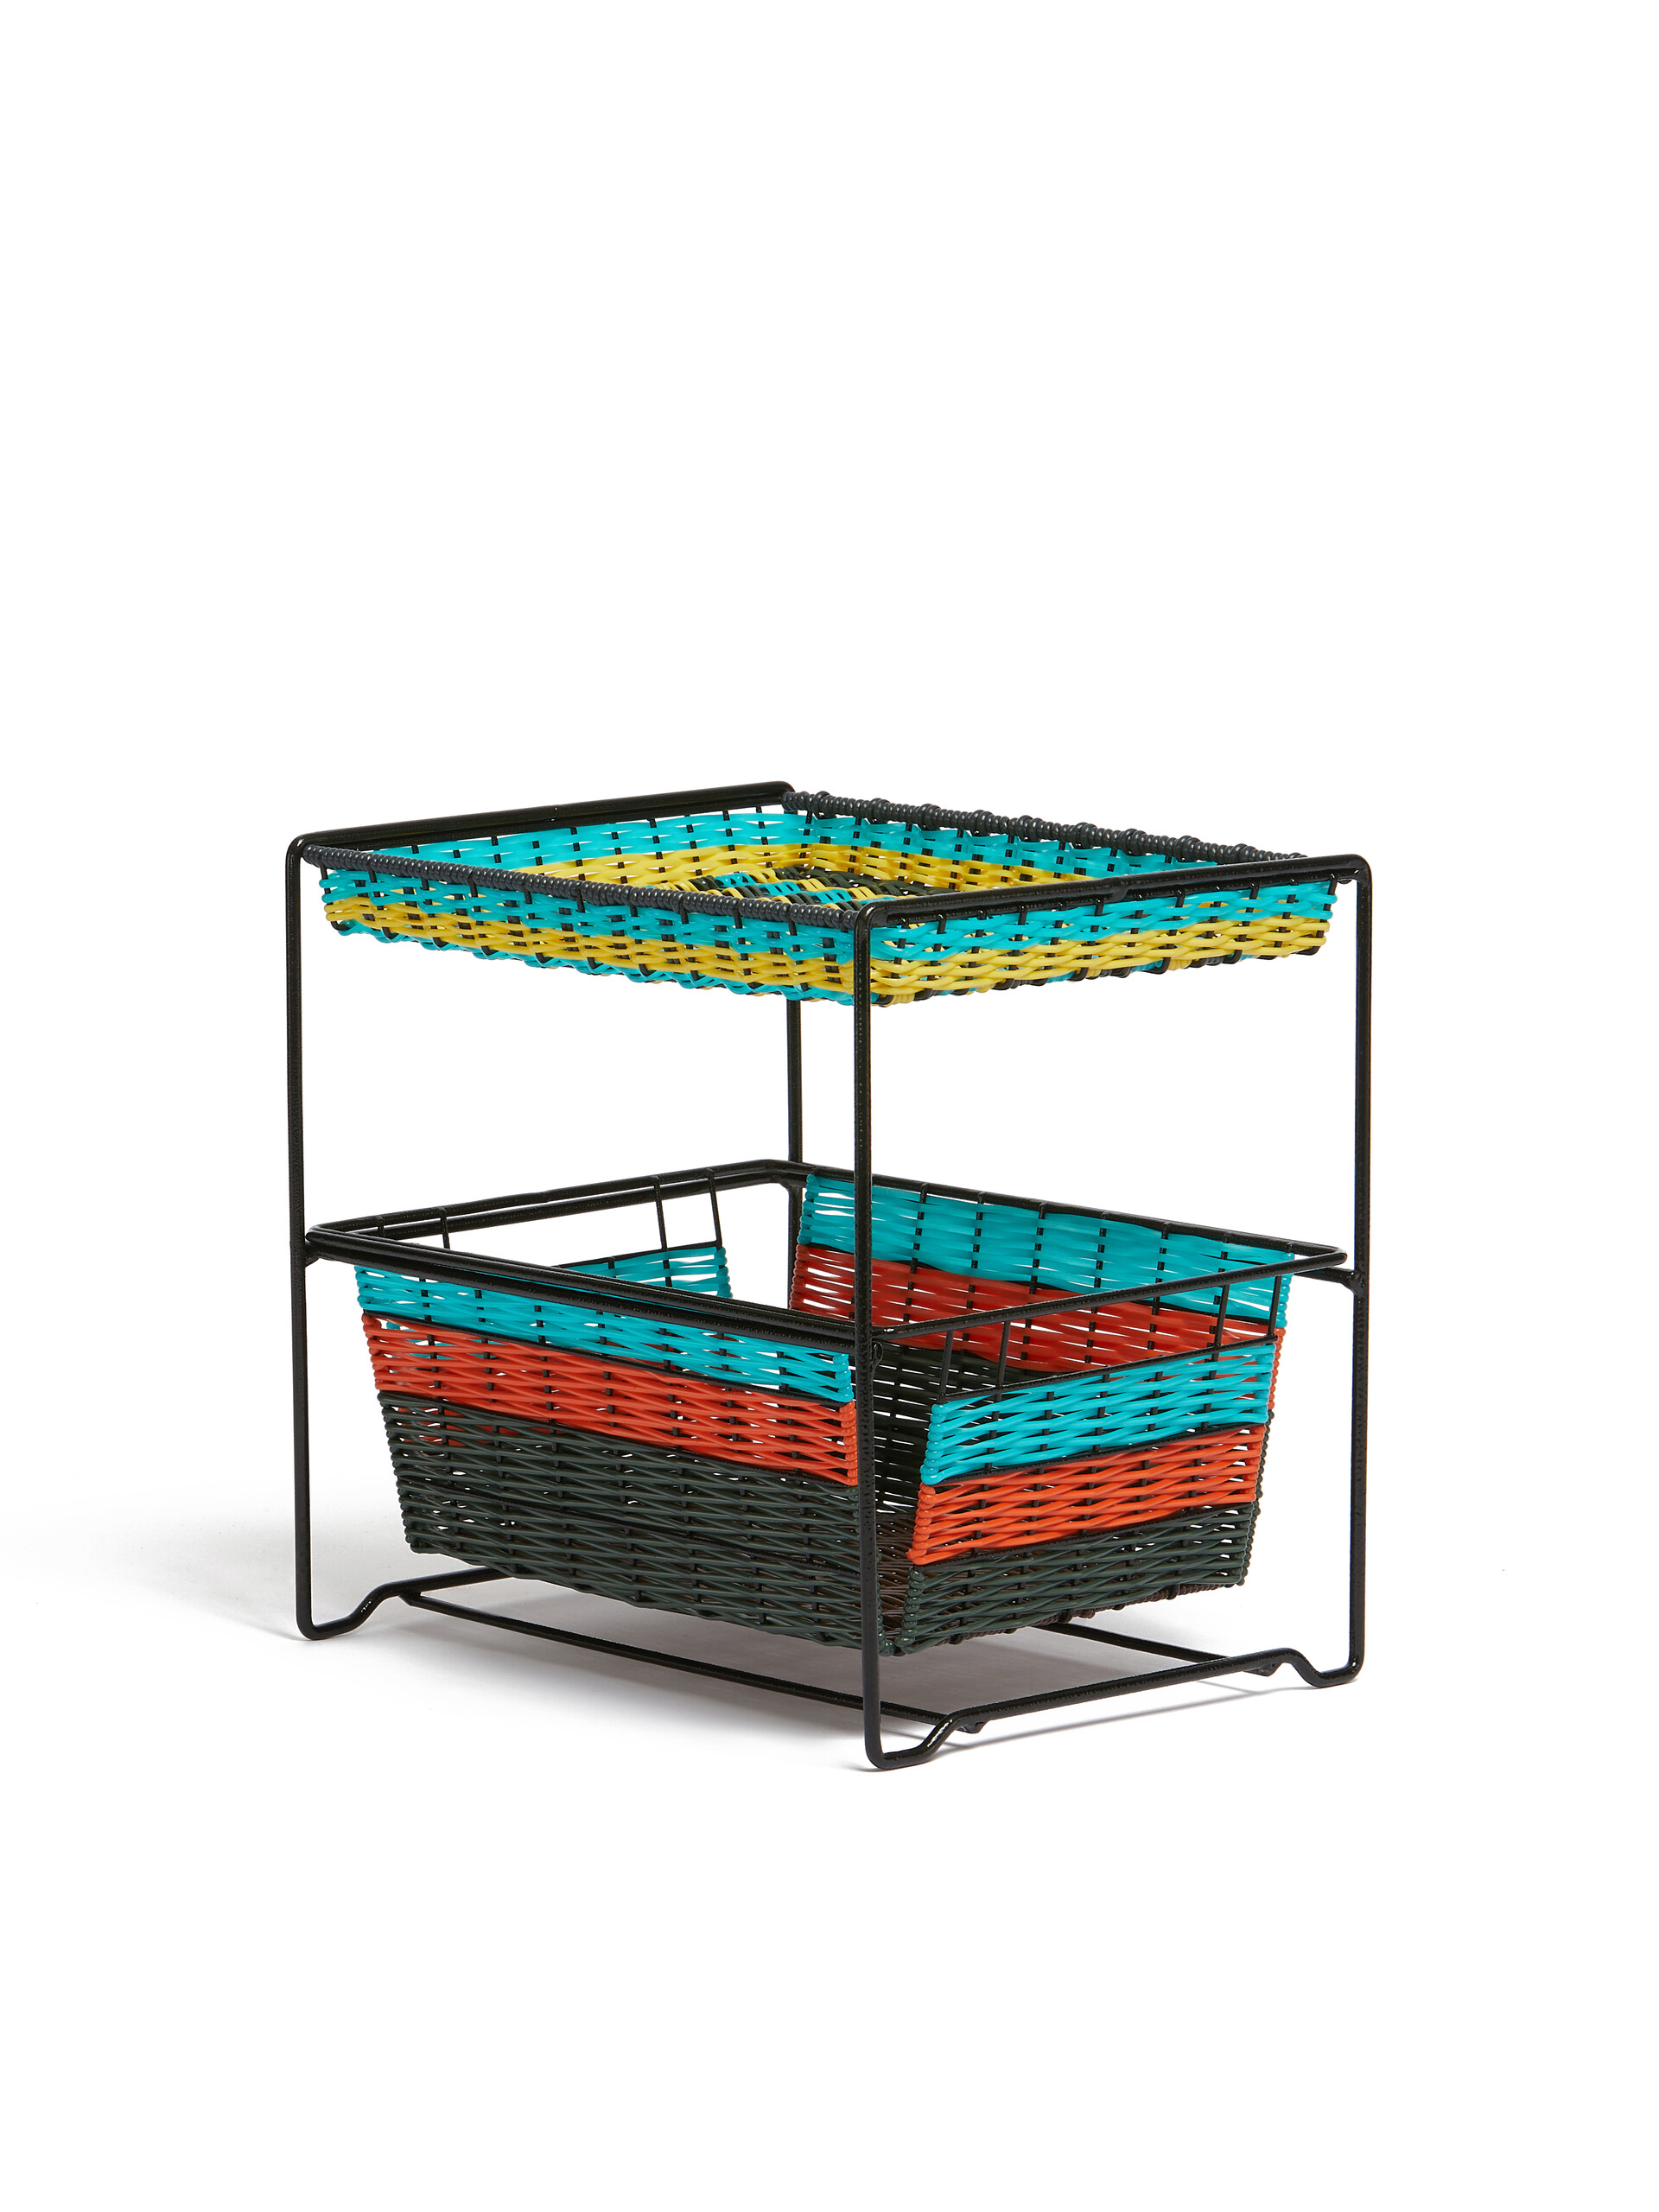 Light blue Marni Market 2-tier basket unit - Furniture - Image 2